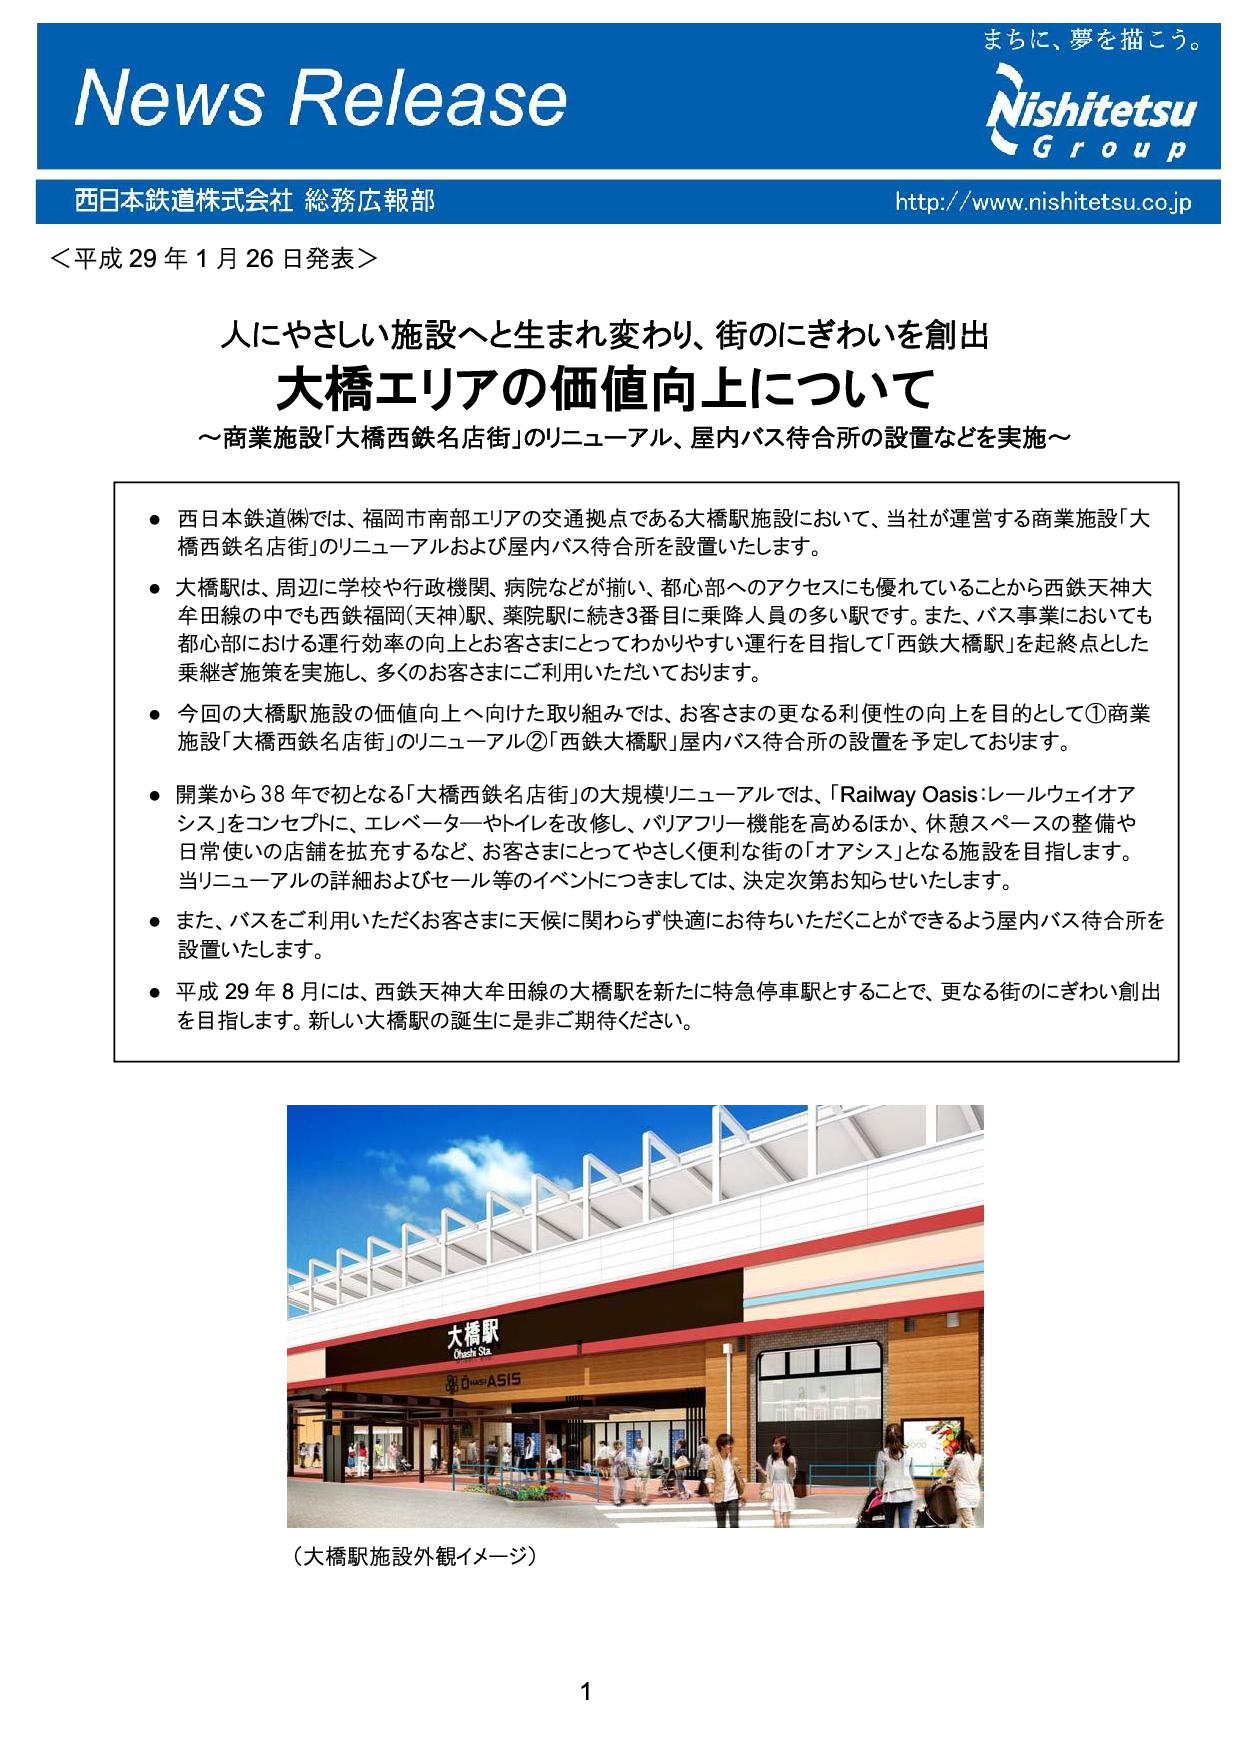 福岡の交通 再開発ナビ 大橋駅リニューアル事業 11